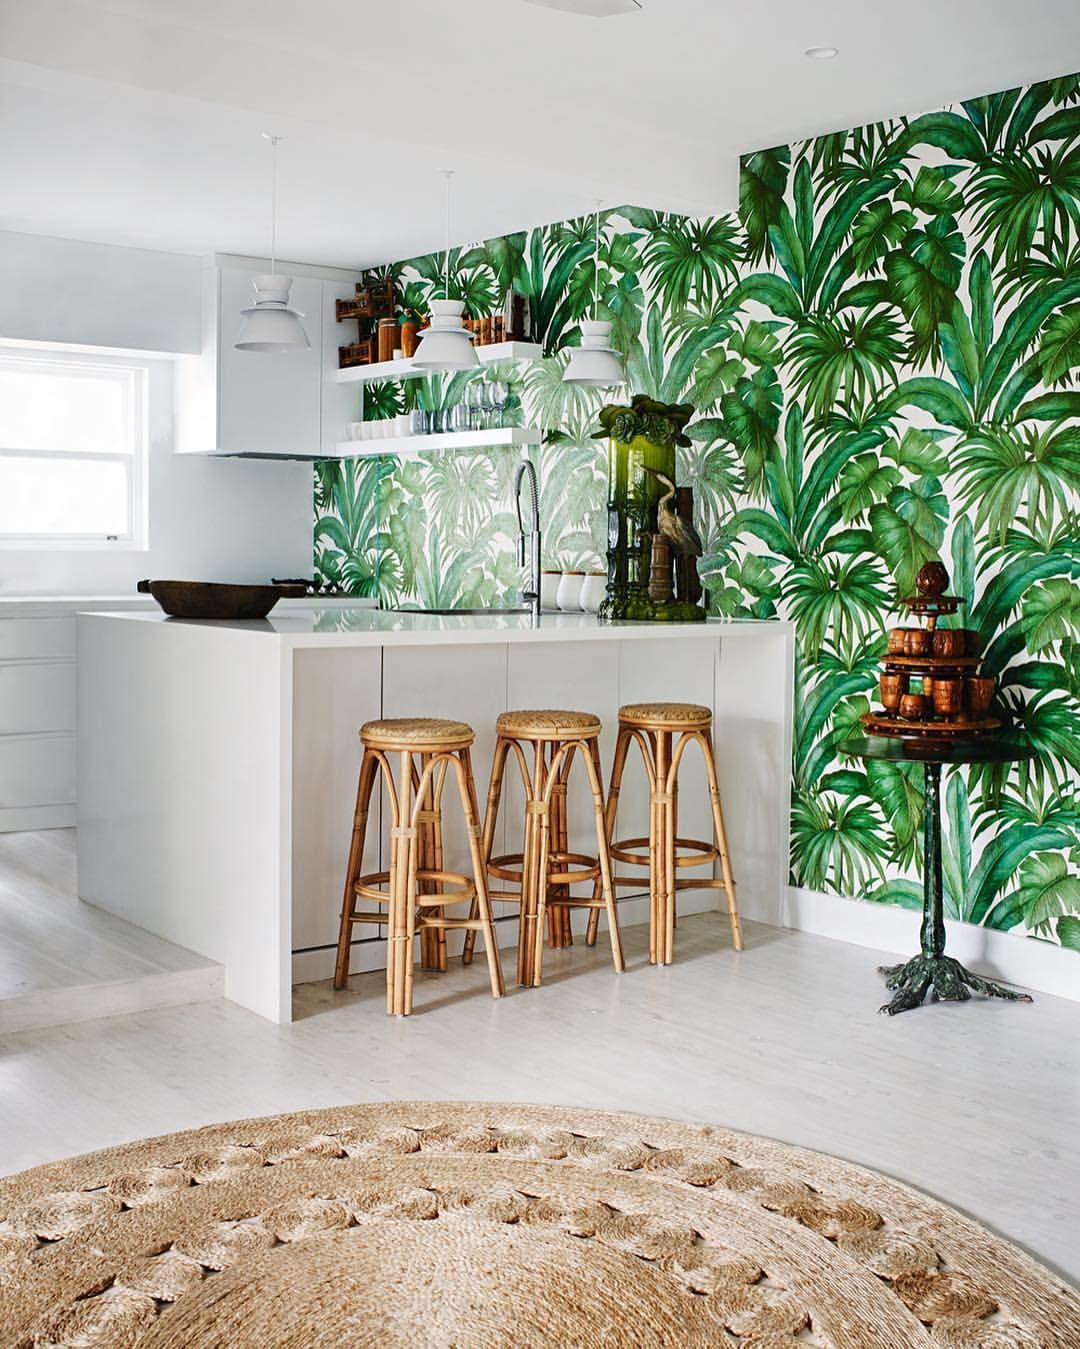 Trang trí nhà bếp theo phong cách nhiệt đới, truyền cảm hứng cho một mùa hè sôi động - Ảnh 13.